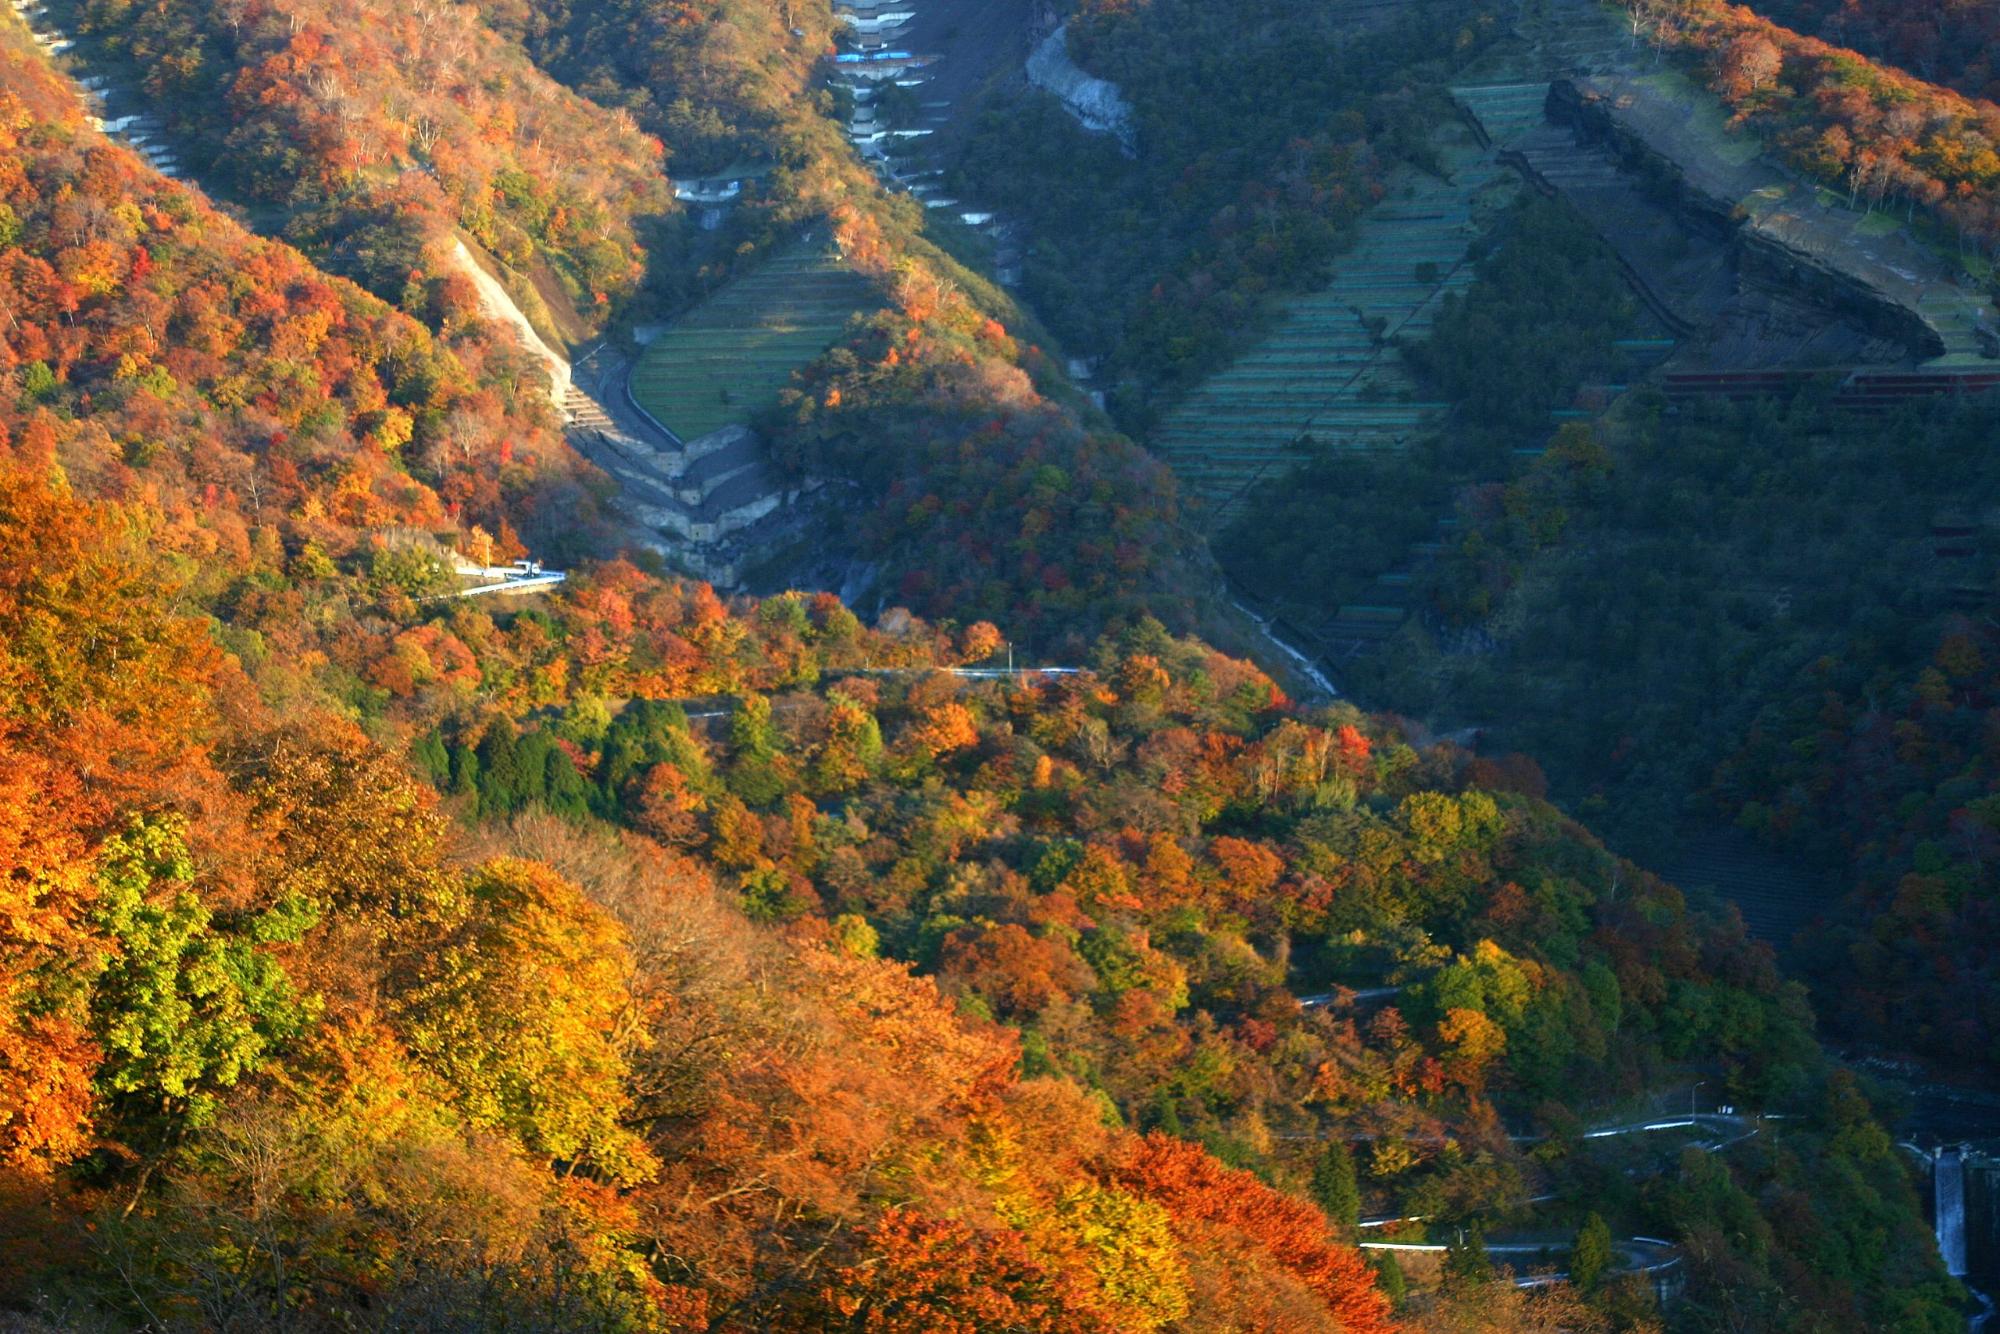 オレンジや黄色、緑、赤に彩られたいろは坂を上空から写した写真